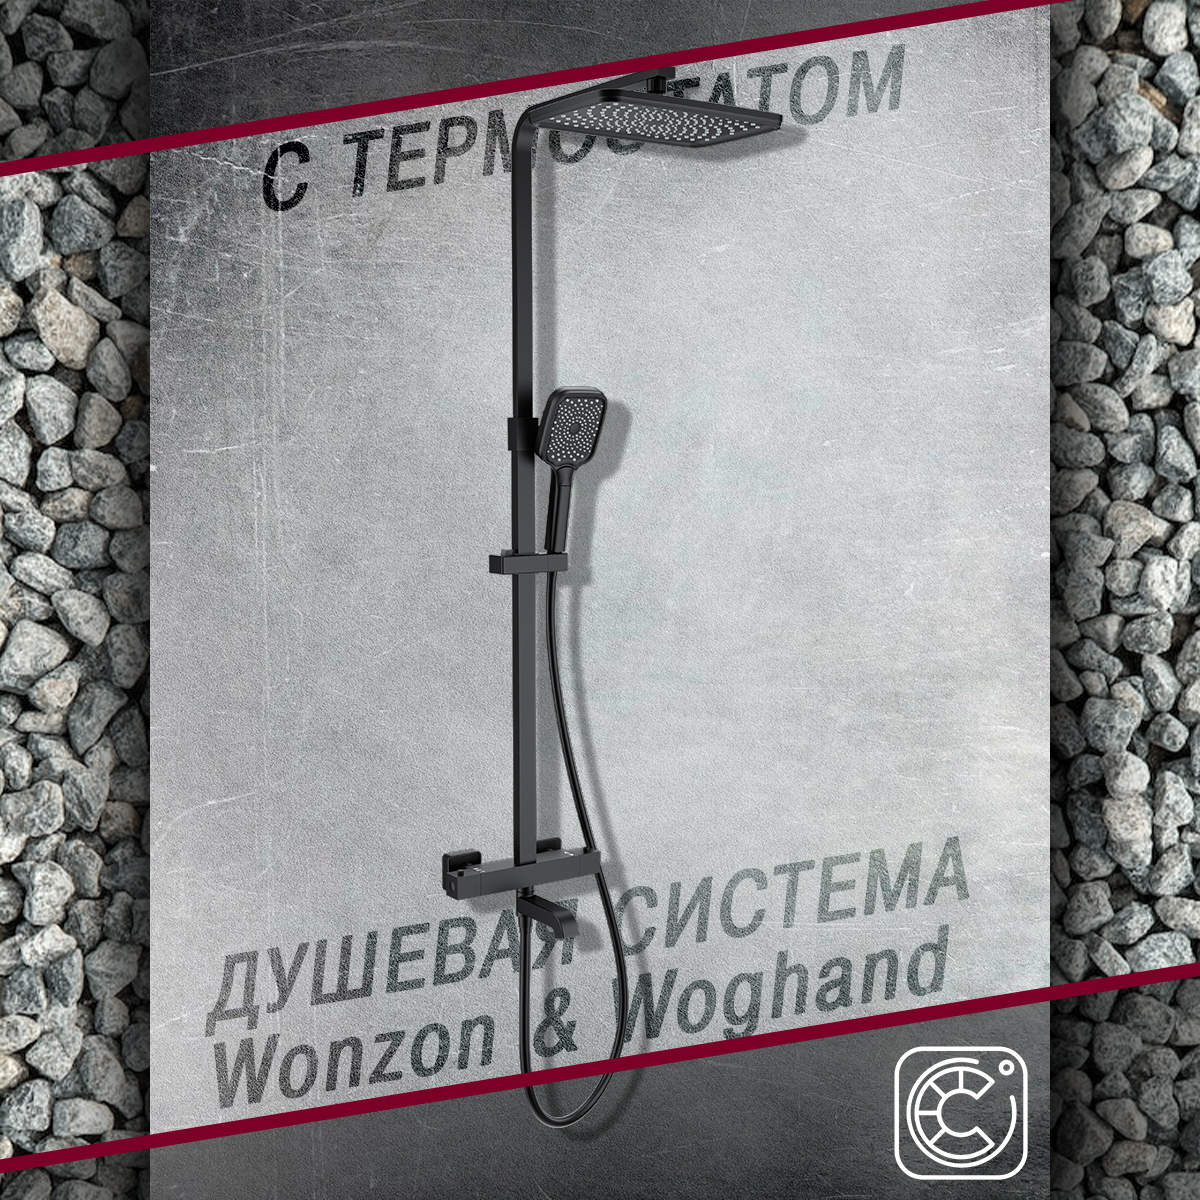 Душевой гарнитур с термостатом WONZON&WOGHAND WW-B3026-T1-MB